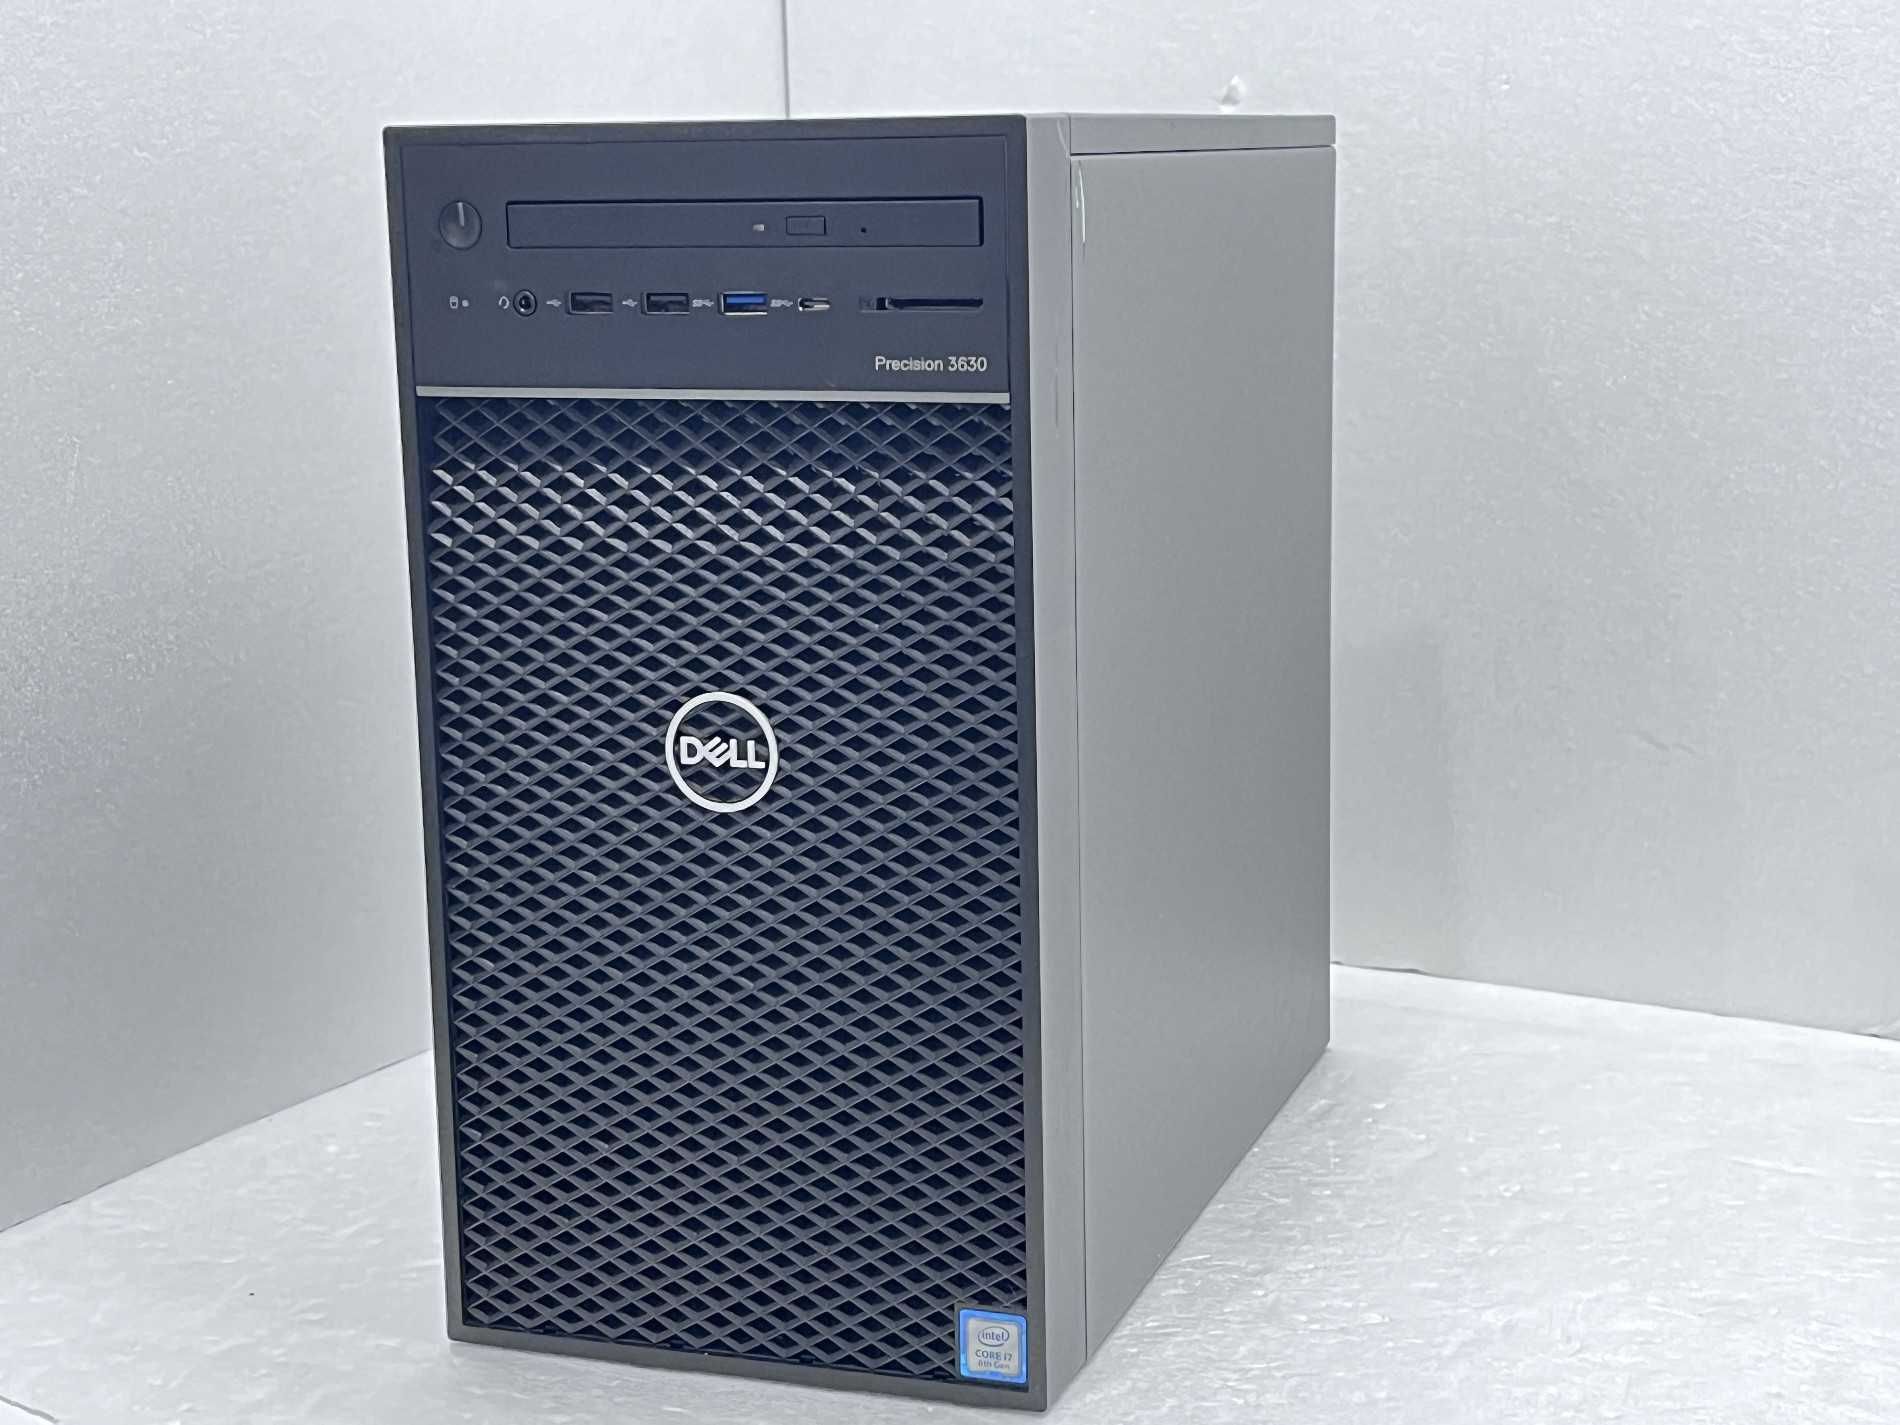 компютър Dell Precision 3630 i5-8600 16GB 260GB Nvidia /->Отлични